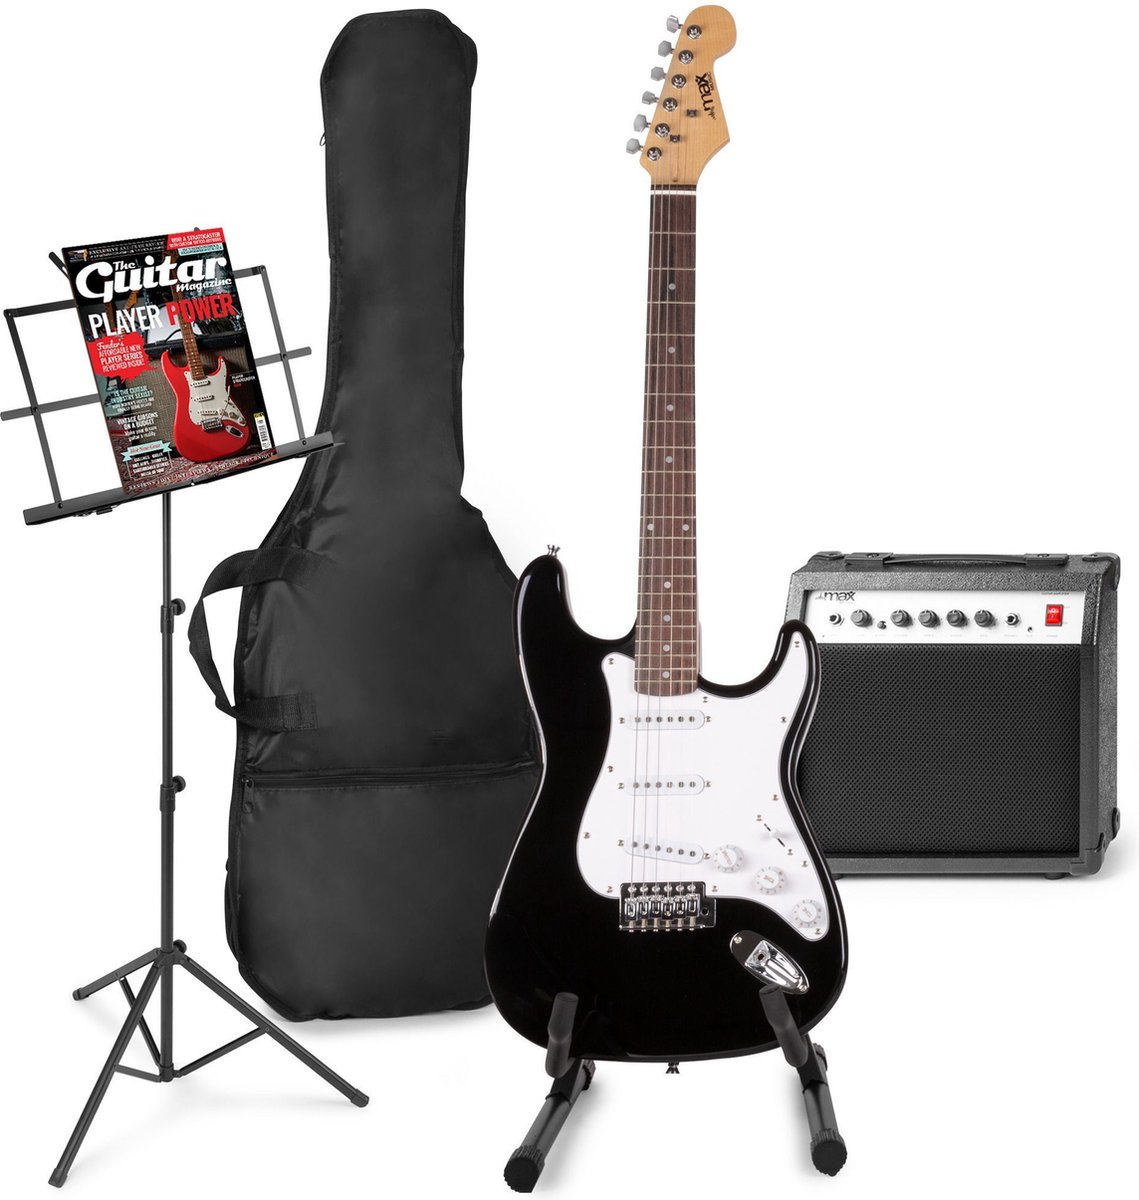 Elektrische gitaar met gitaar versterker - MAX Gigkit - Perfect voor beginners - incl. gitaar standaard, muziekstandaard, gitaar stemapparaat, gitaartas en plectrum - Zwart